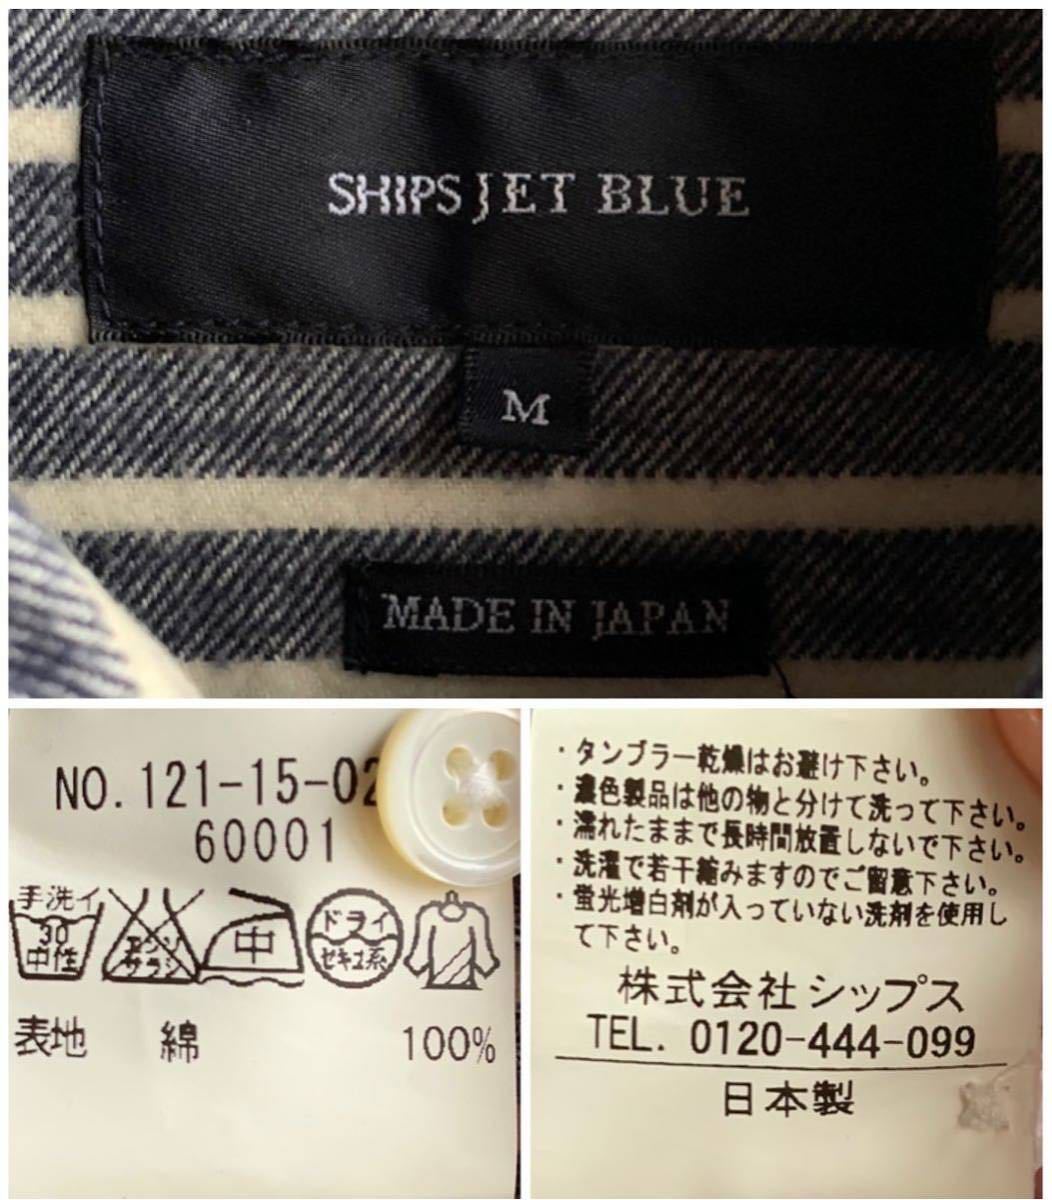 【美品】SHIPS JET BLUE シャツ メンズ M ボーダー 紺×白 綿100% 日本製 シップス ジェット ブルーの画像4